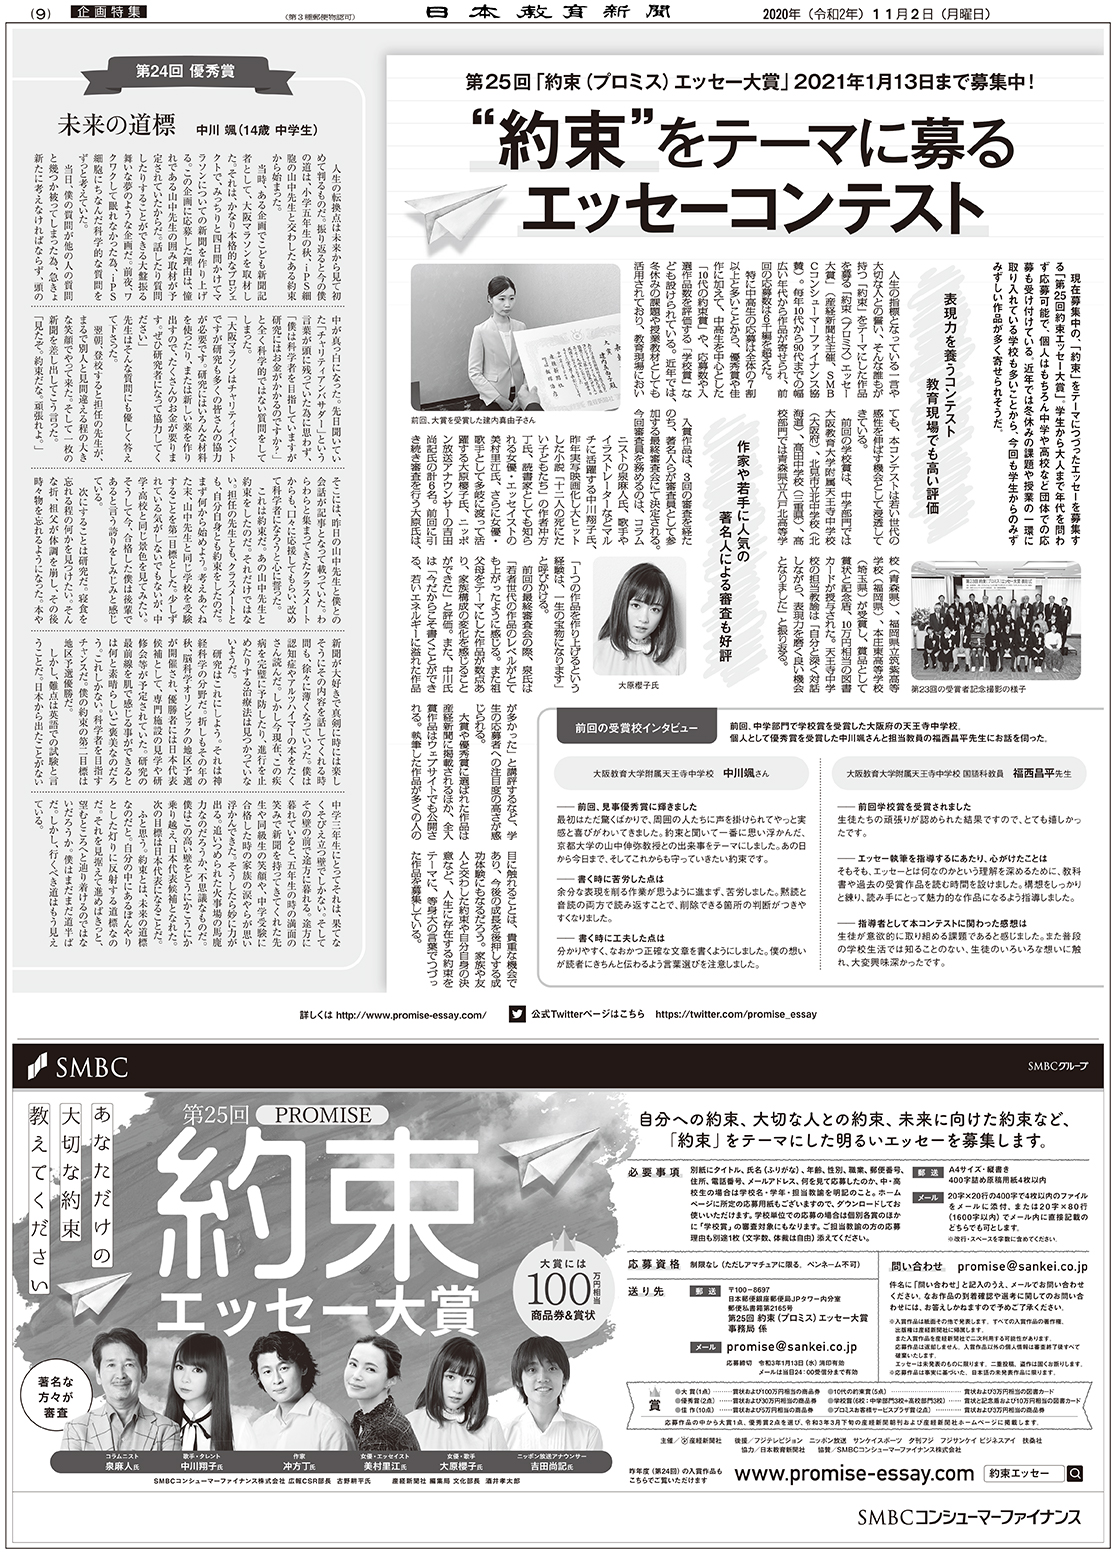 産経新聞社 日本教育新聞教育市場へのマーケティングガイド